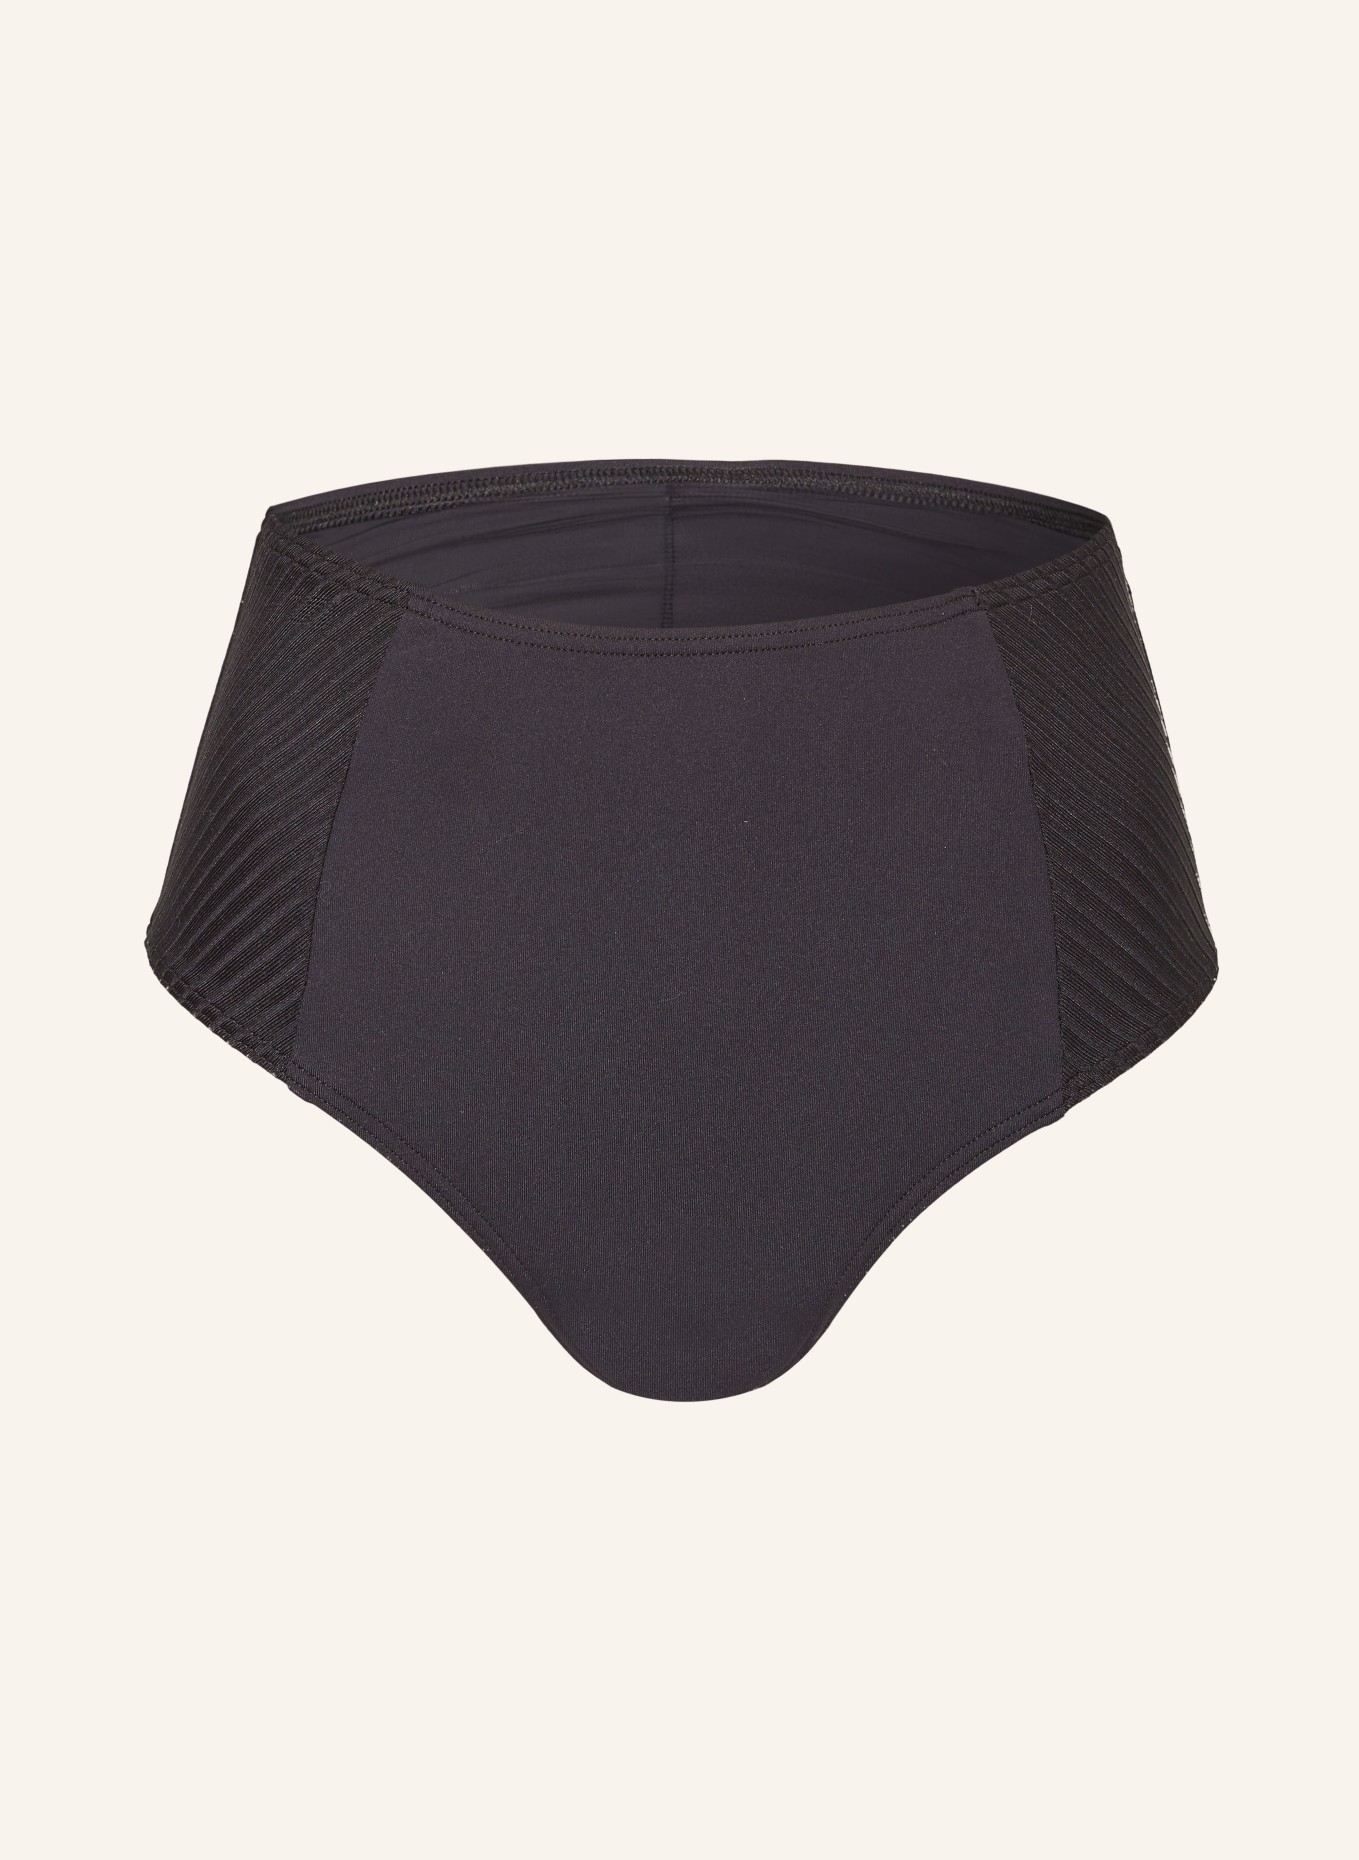 CYELL High-waist bikini bottoms CAVIAR, Color: BLACK (Image 1)